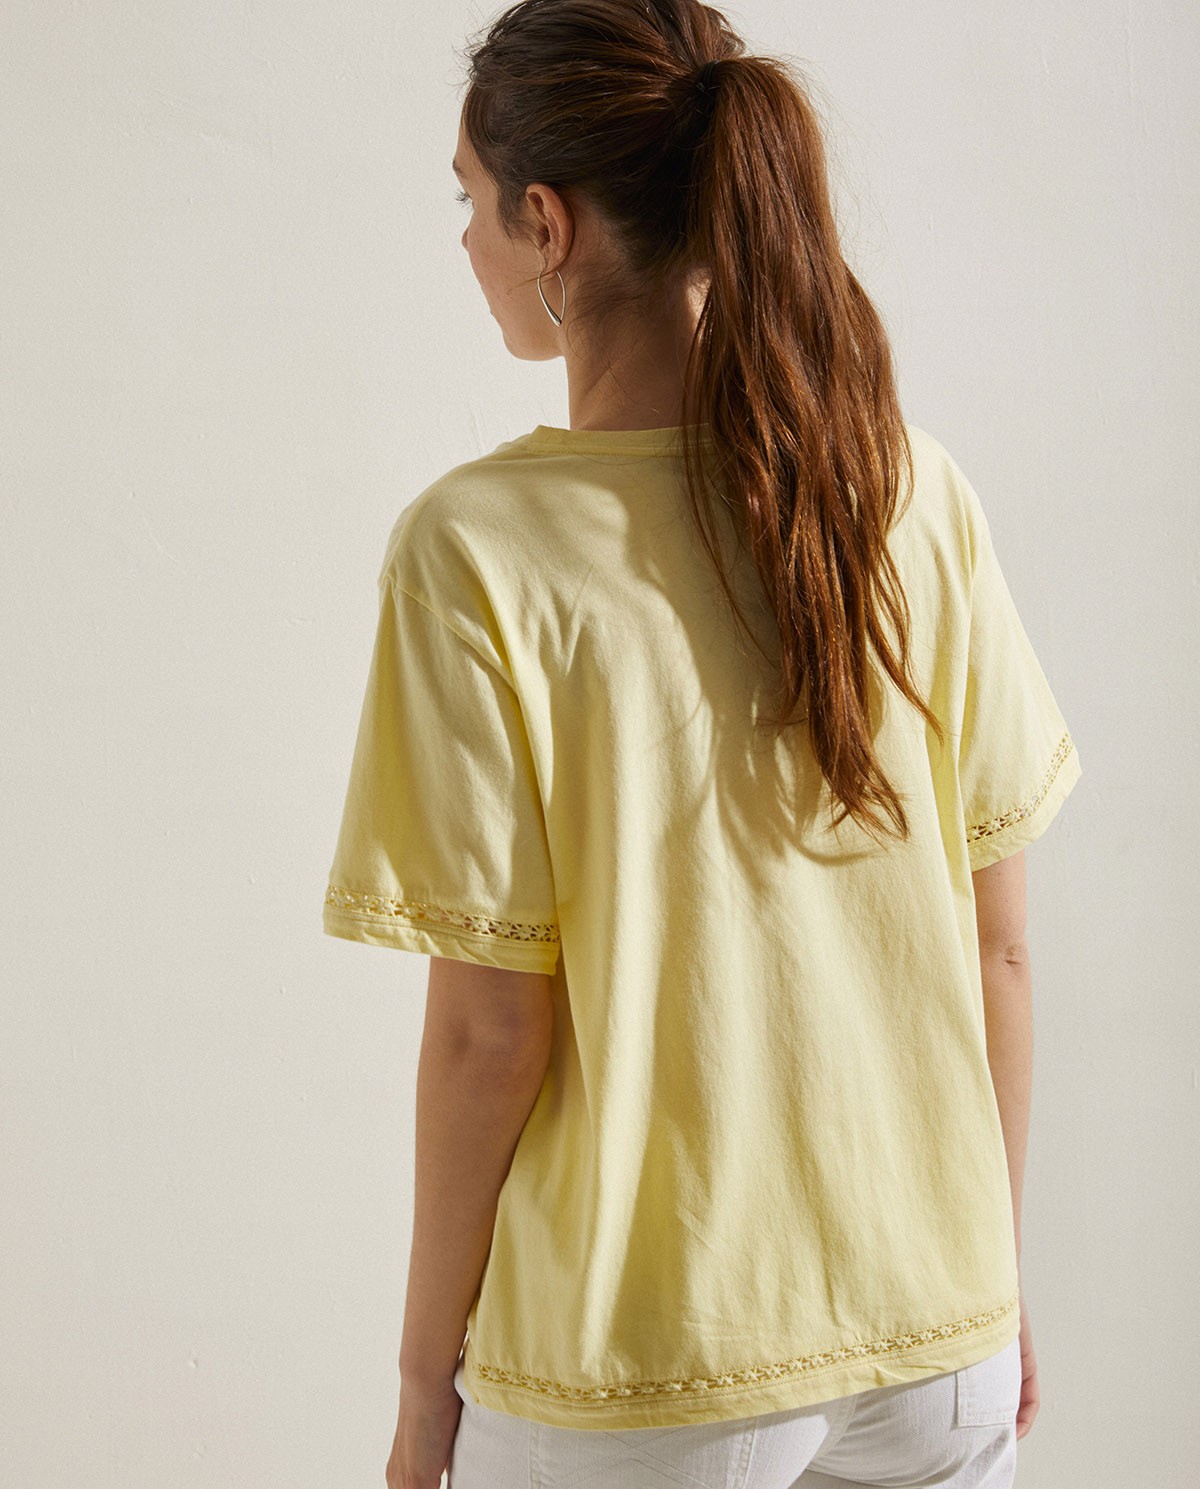 Cotton t-shirt decorative stitching Yellow 4